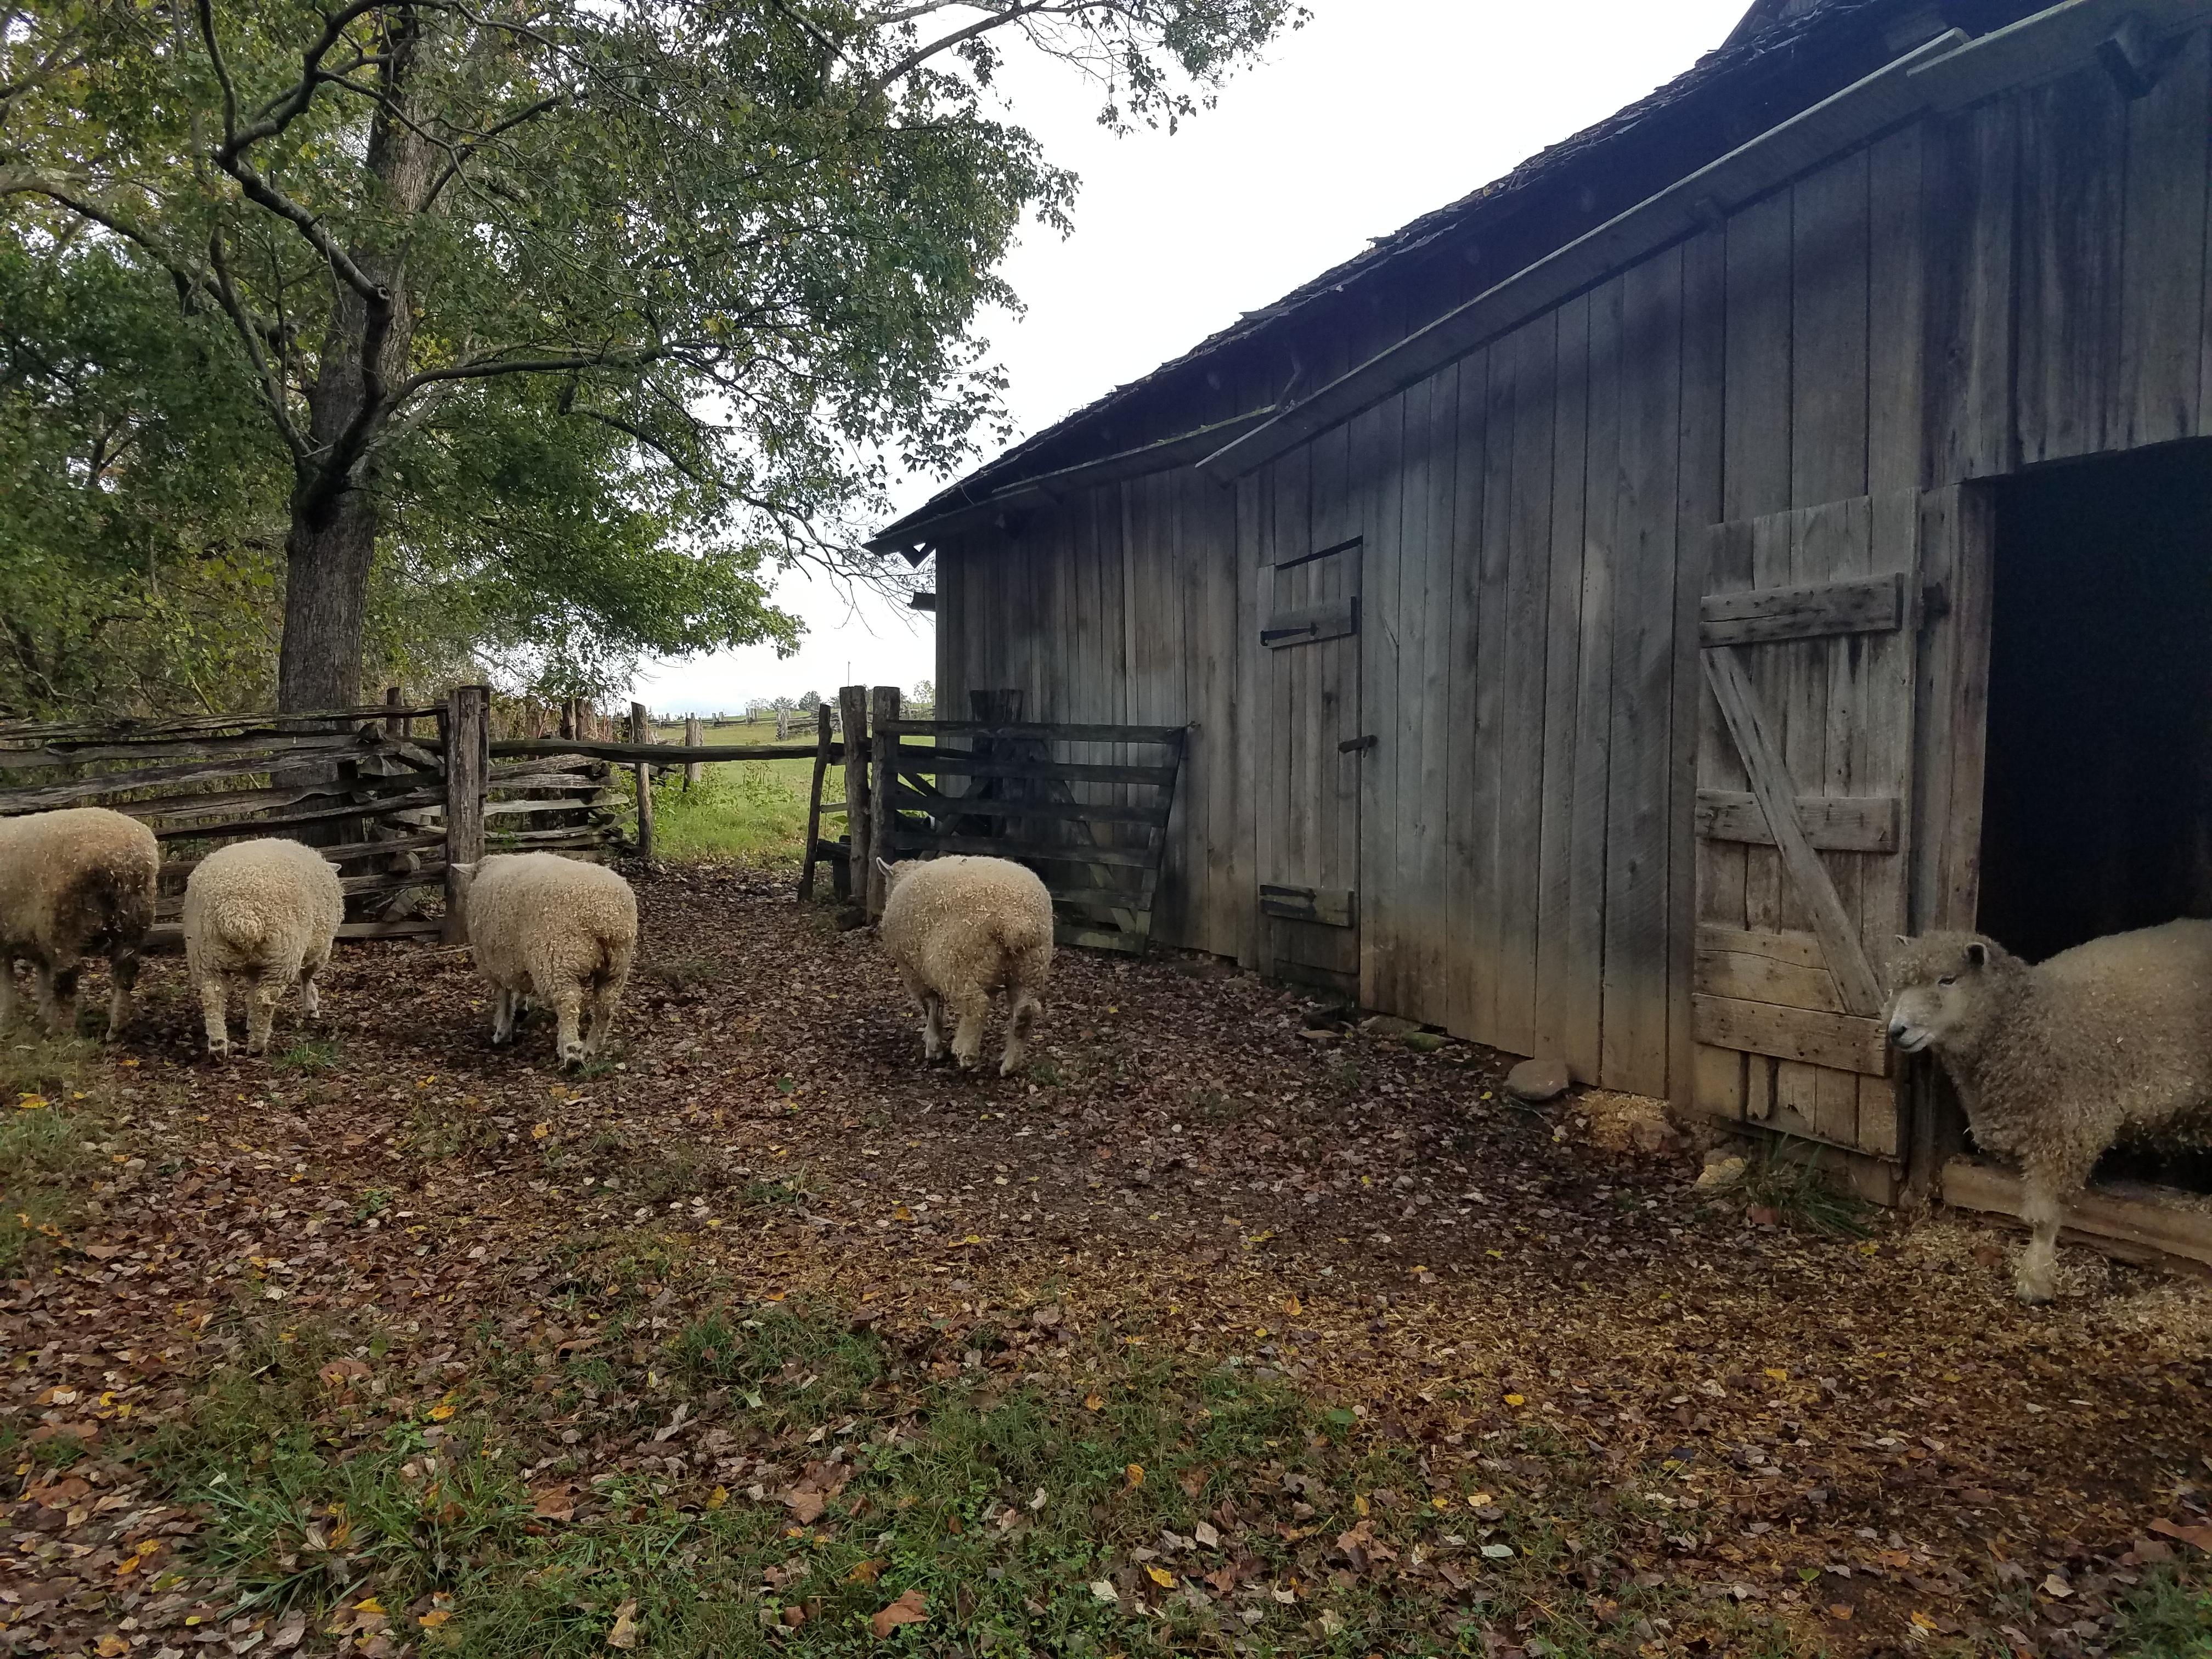 Sheep at barn on farm